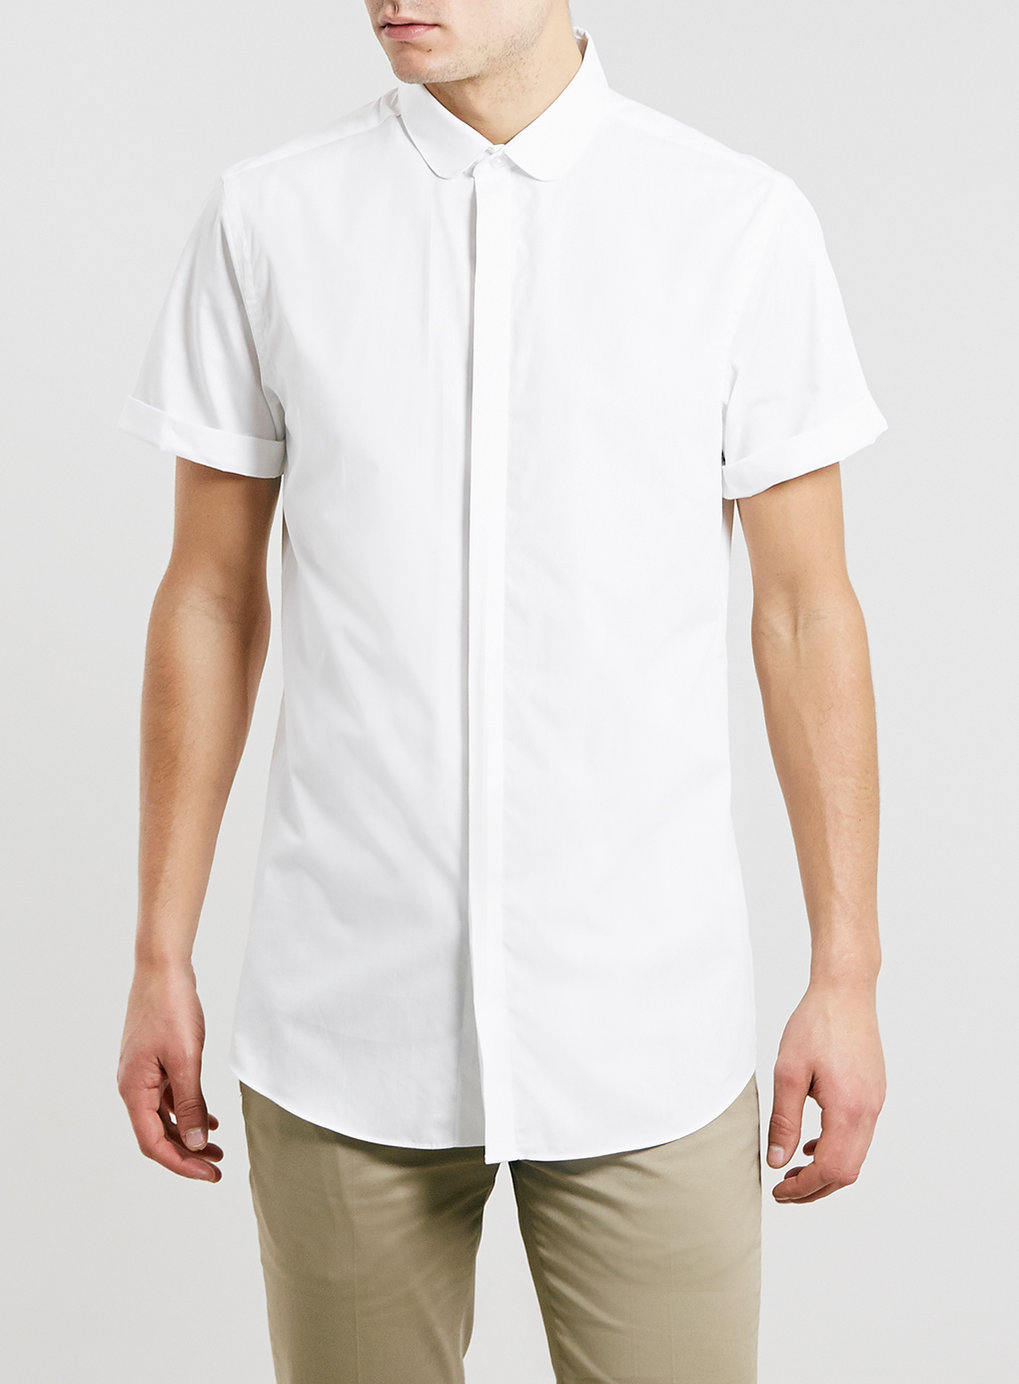 Lyst - TOPMAN Short Sleeve Penny Collar Dress Shirt in White for Men